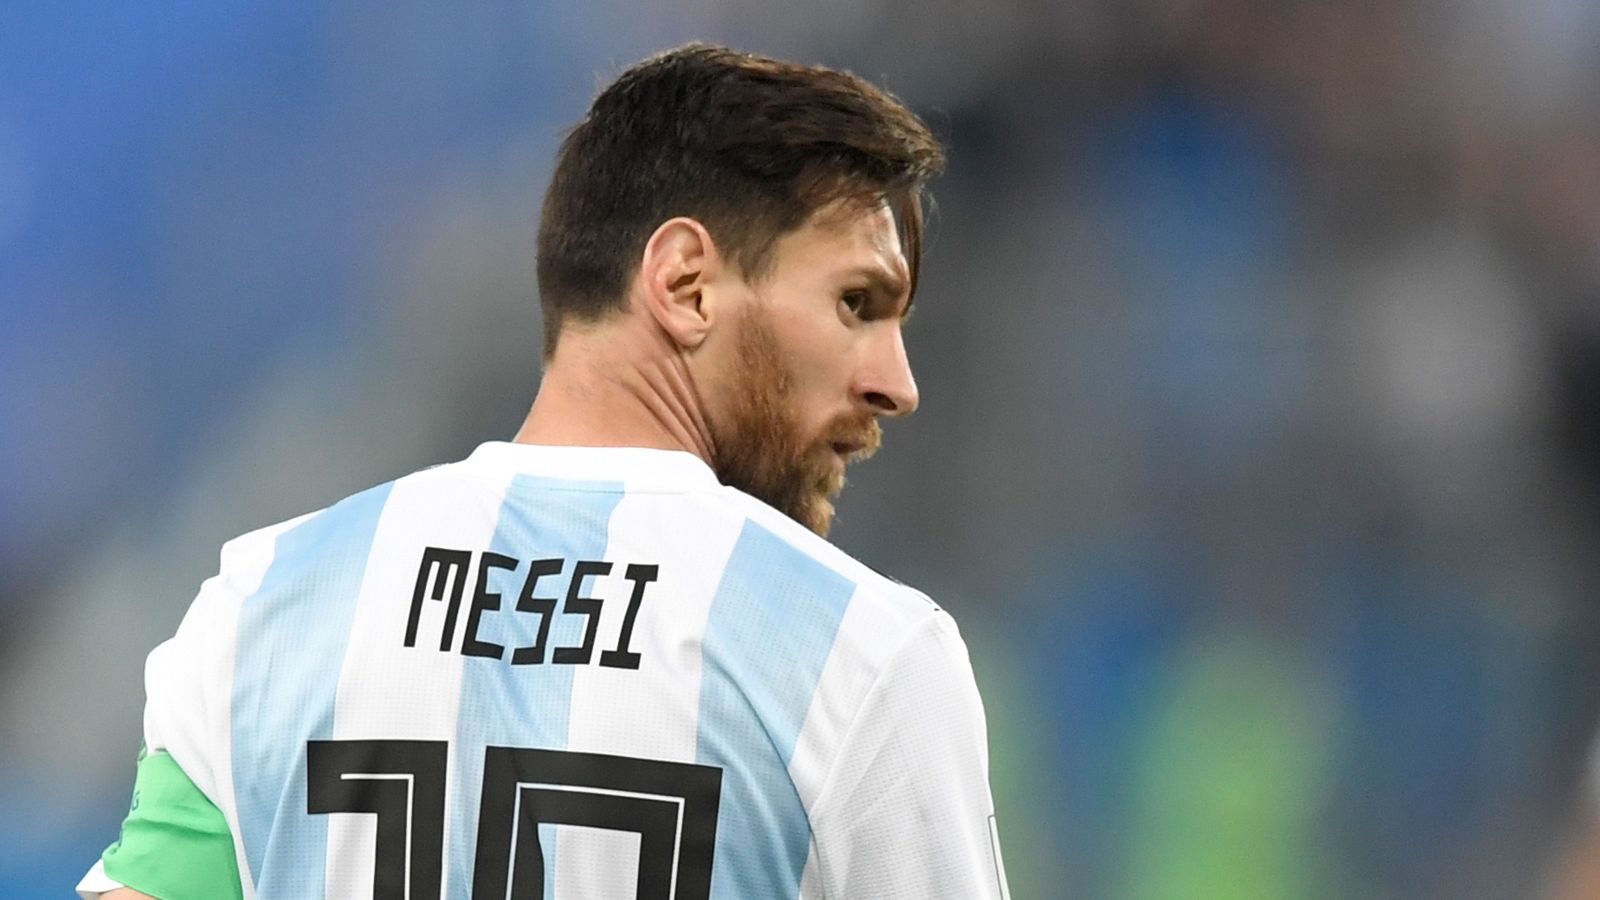 Makkelijker maken Kroniek verraden Lionel Messi's Argentina future unclear after Diego Maradona suggests  retirement | Football News | Sky Sports